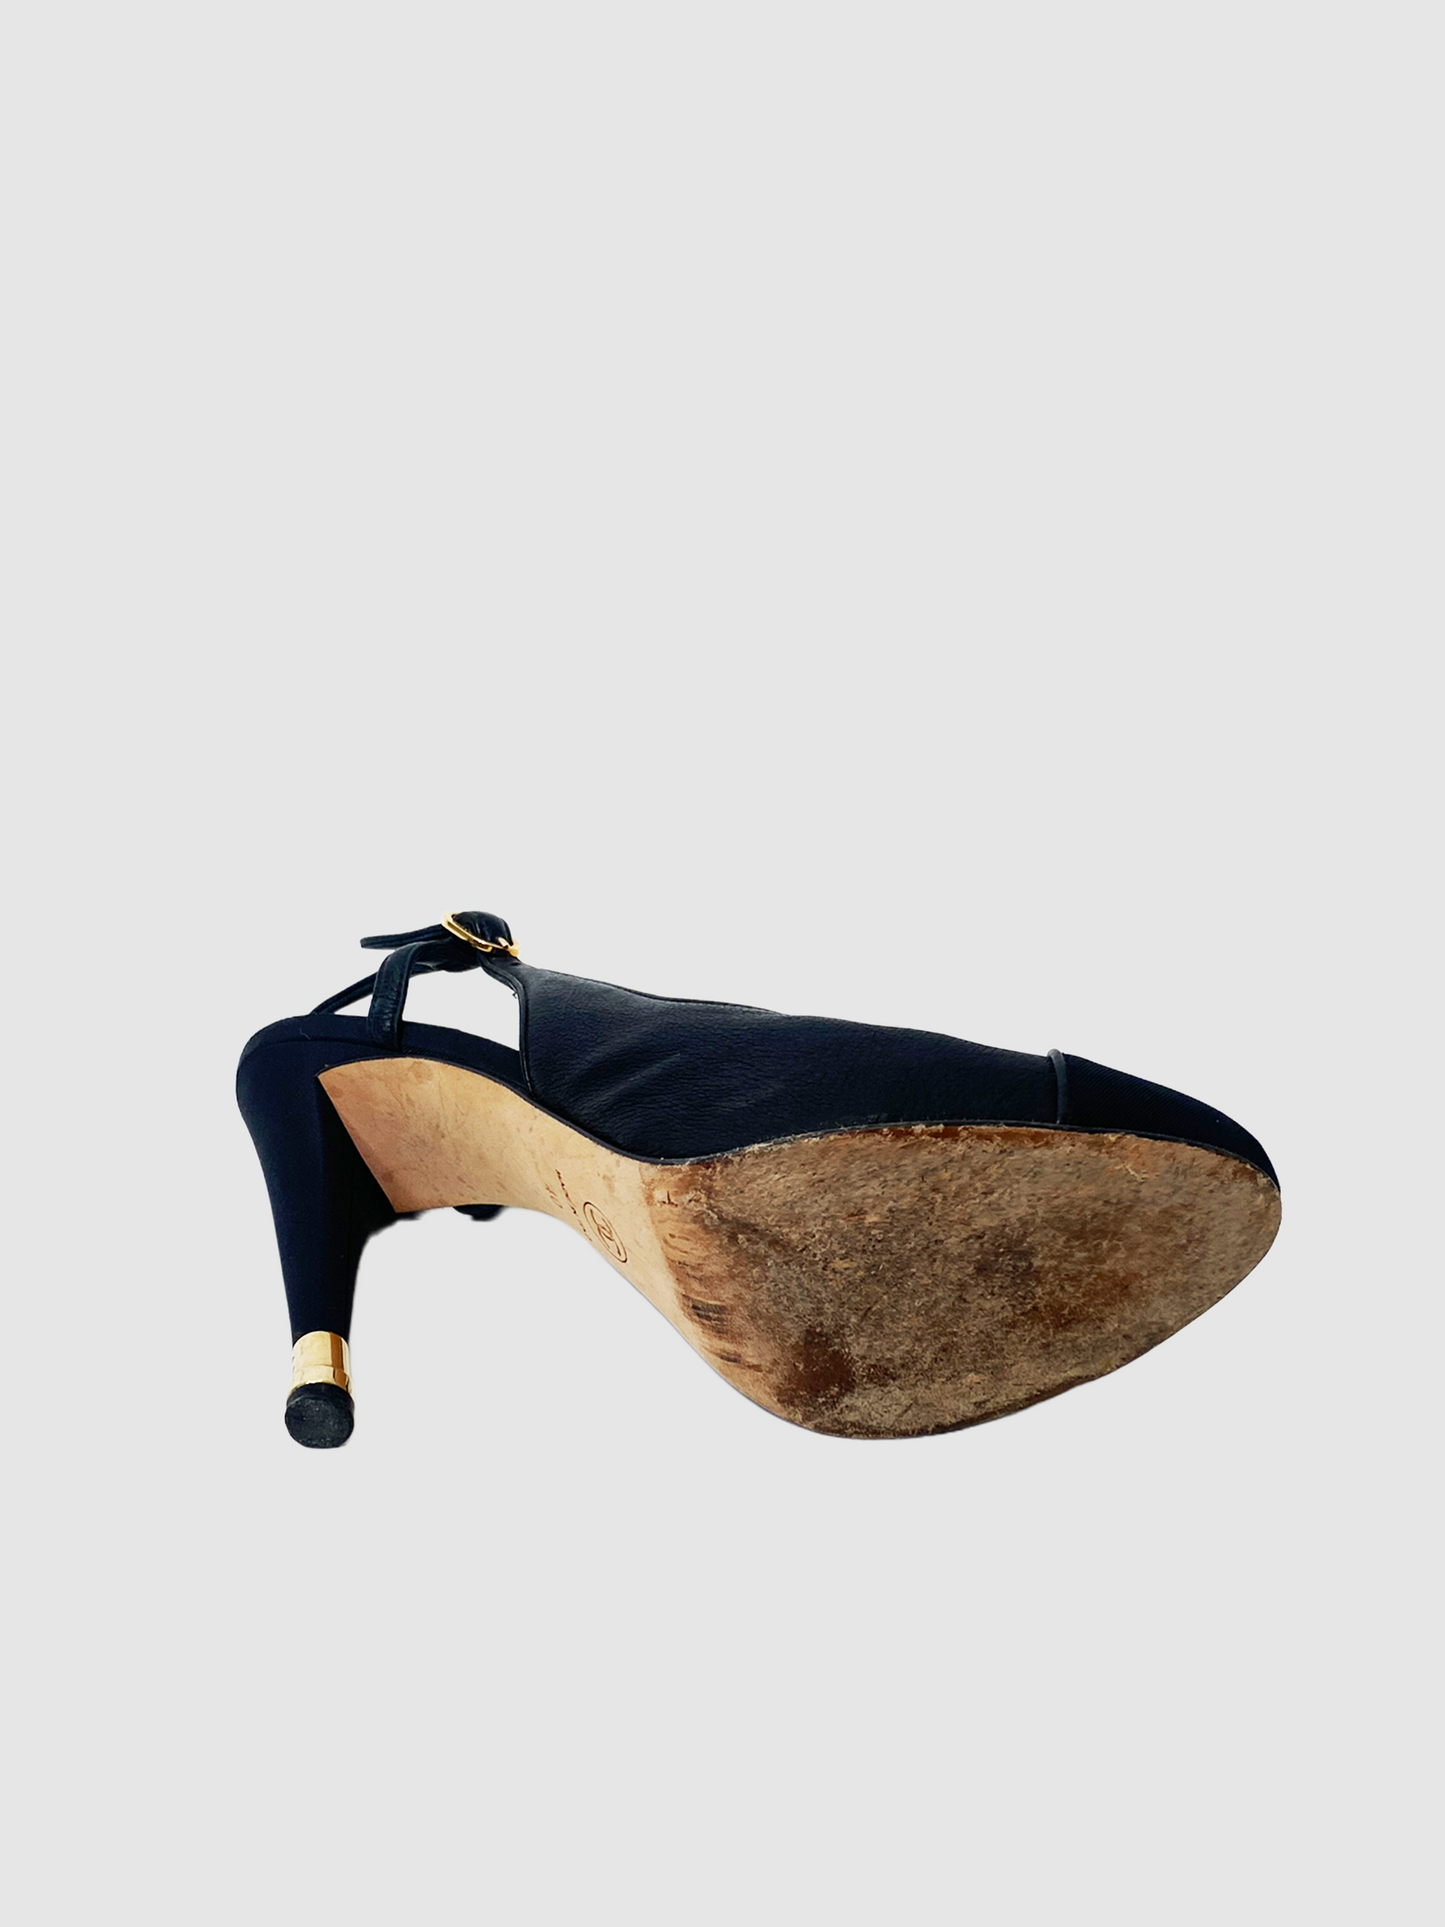 Chanel Black Leather Sling Back Platform Sandals - Size 40